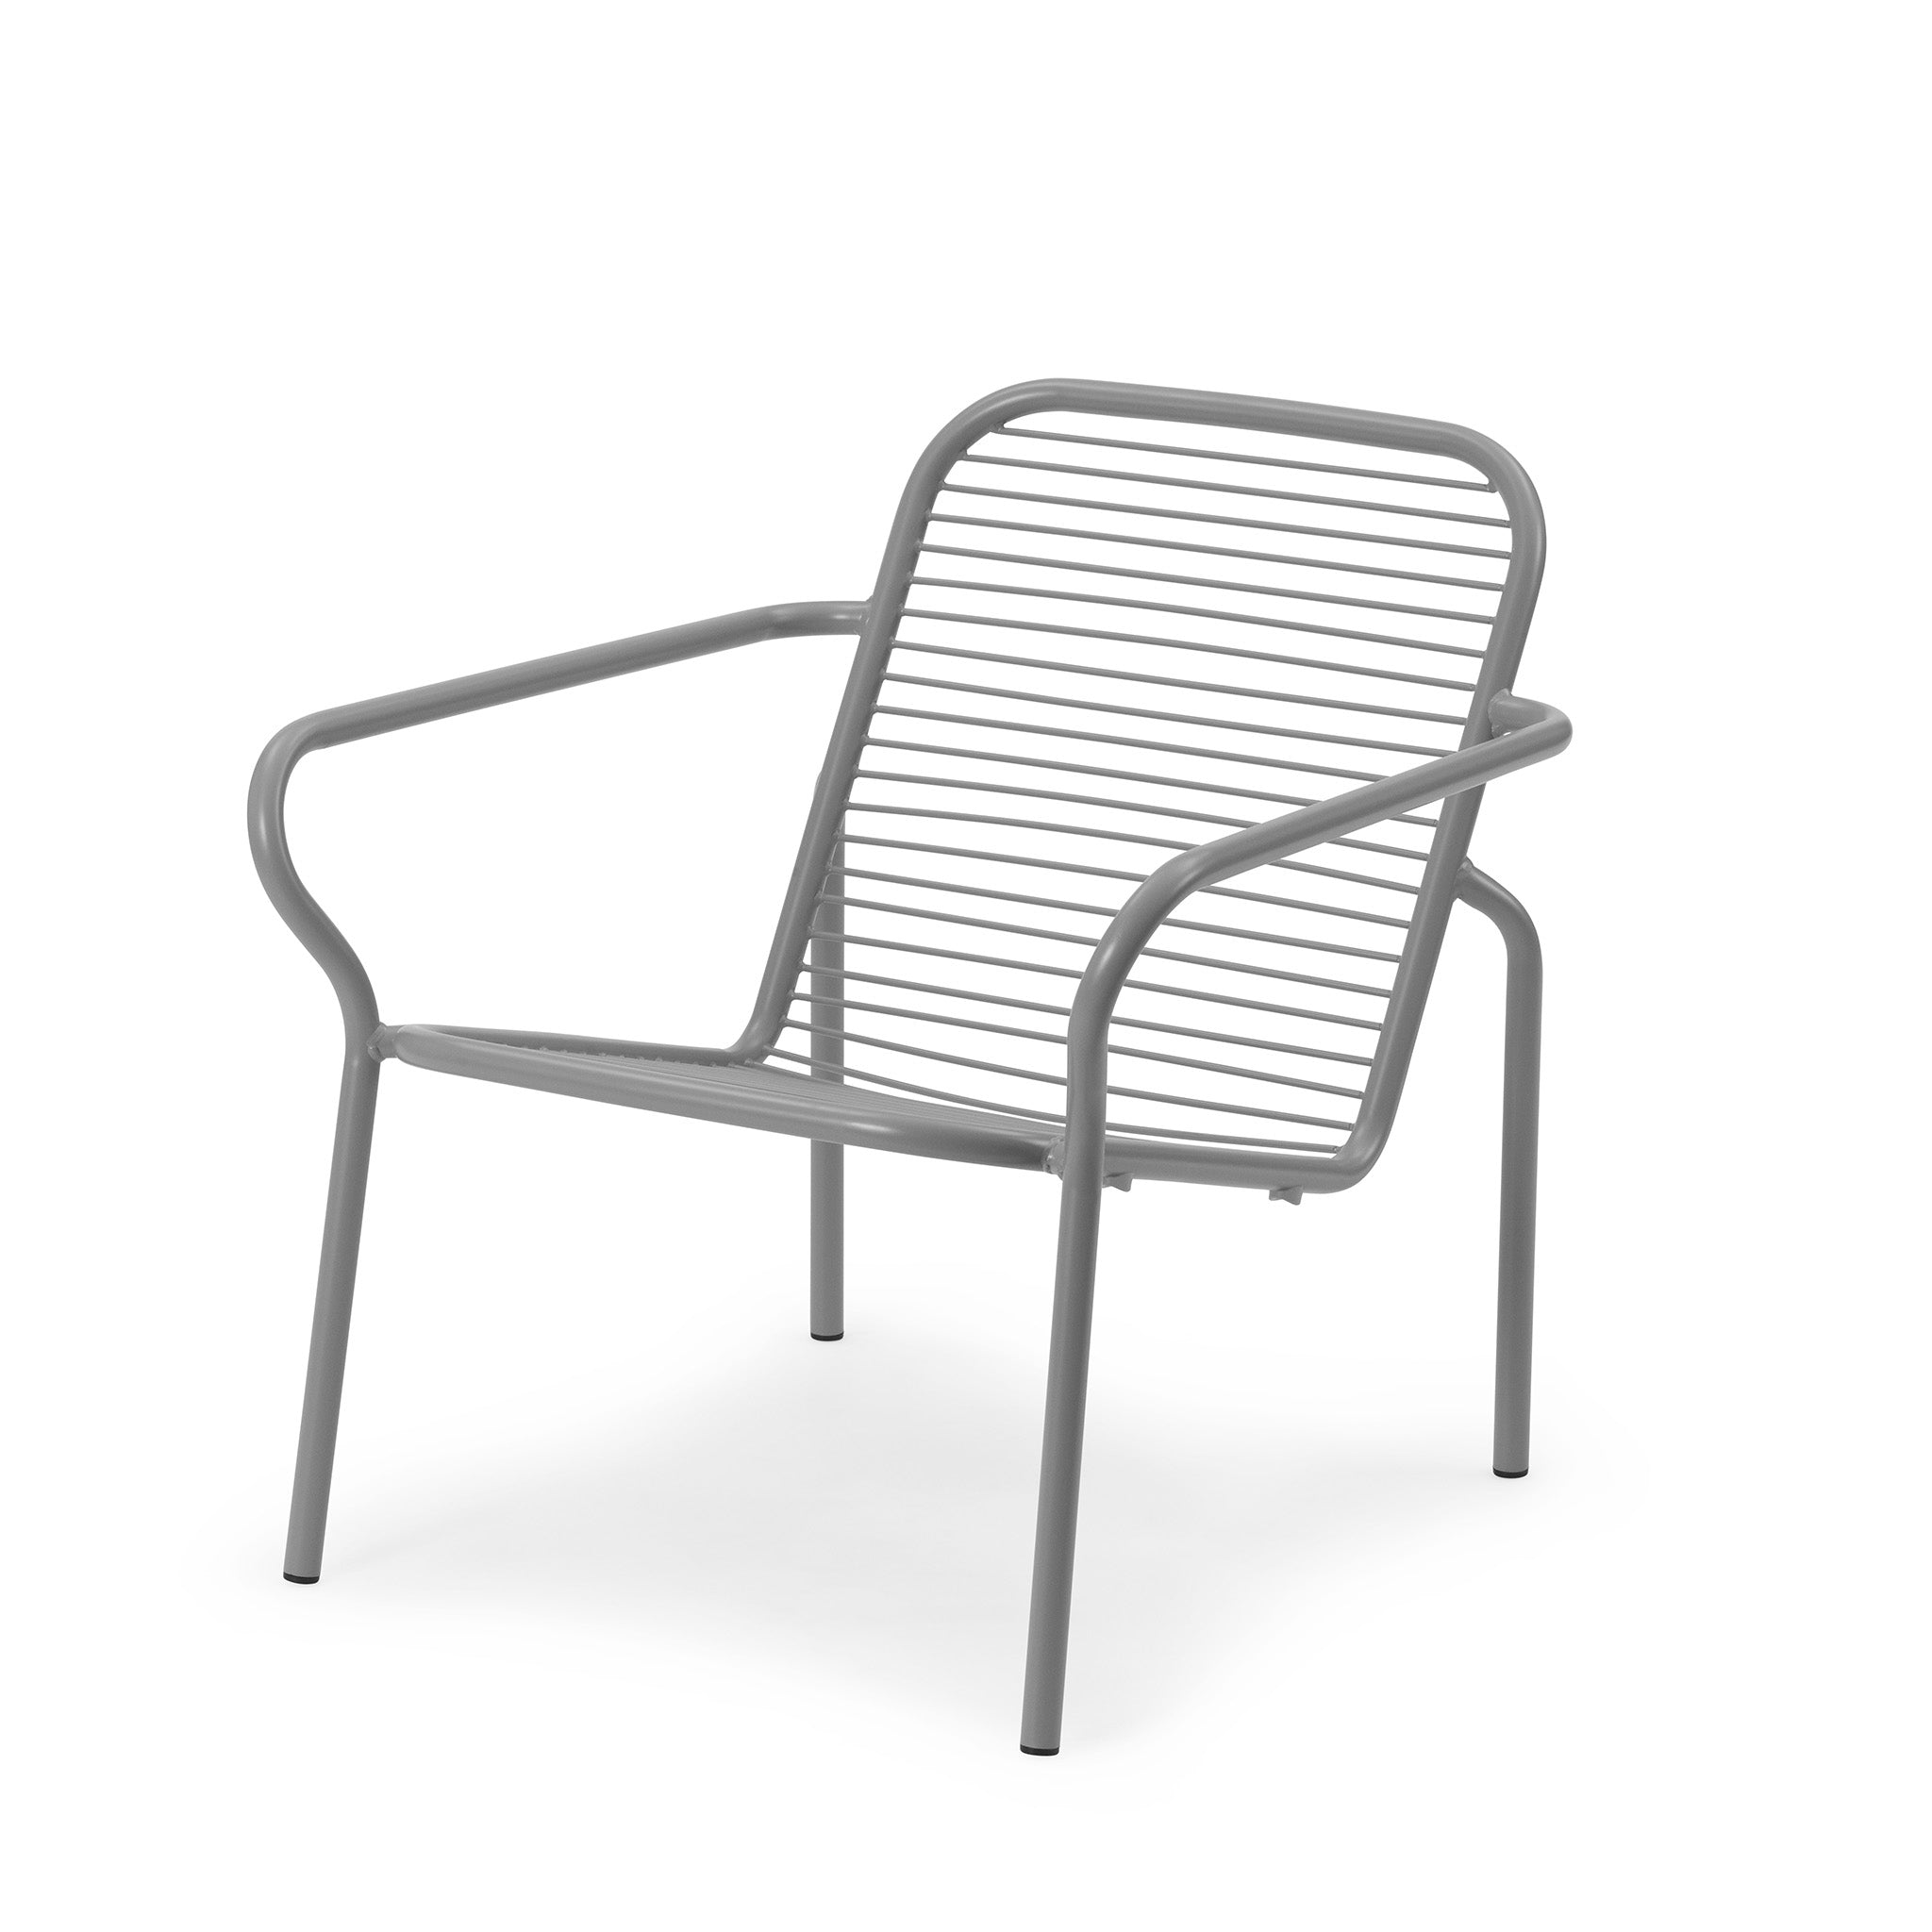 Vig Lounge Chair by Simon Legald for Normann Copenhagen